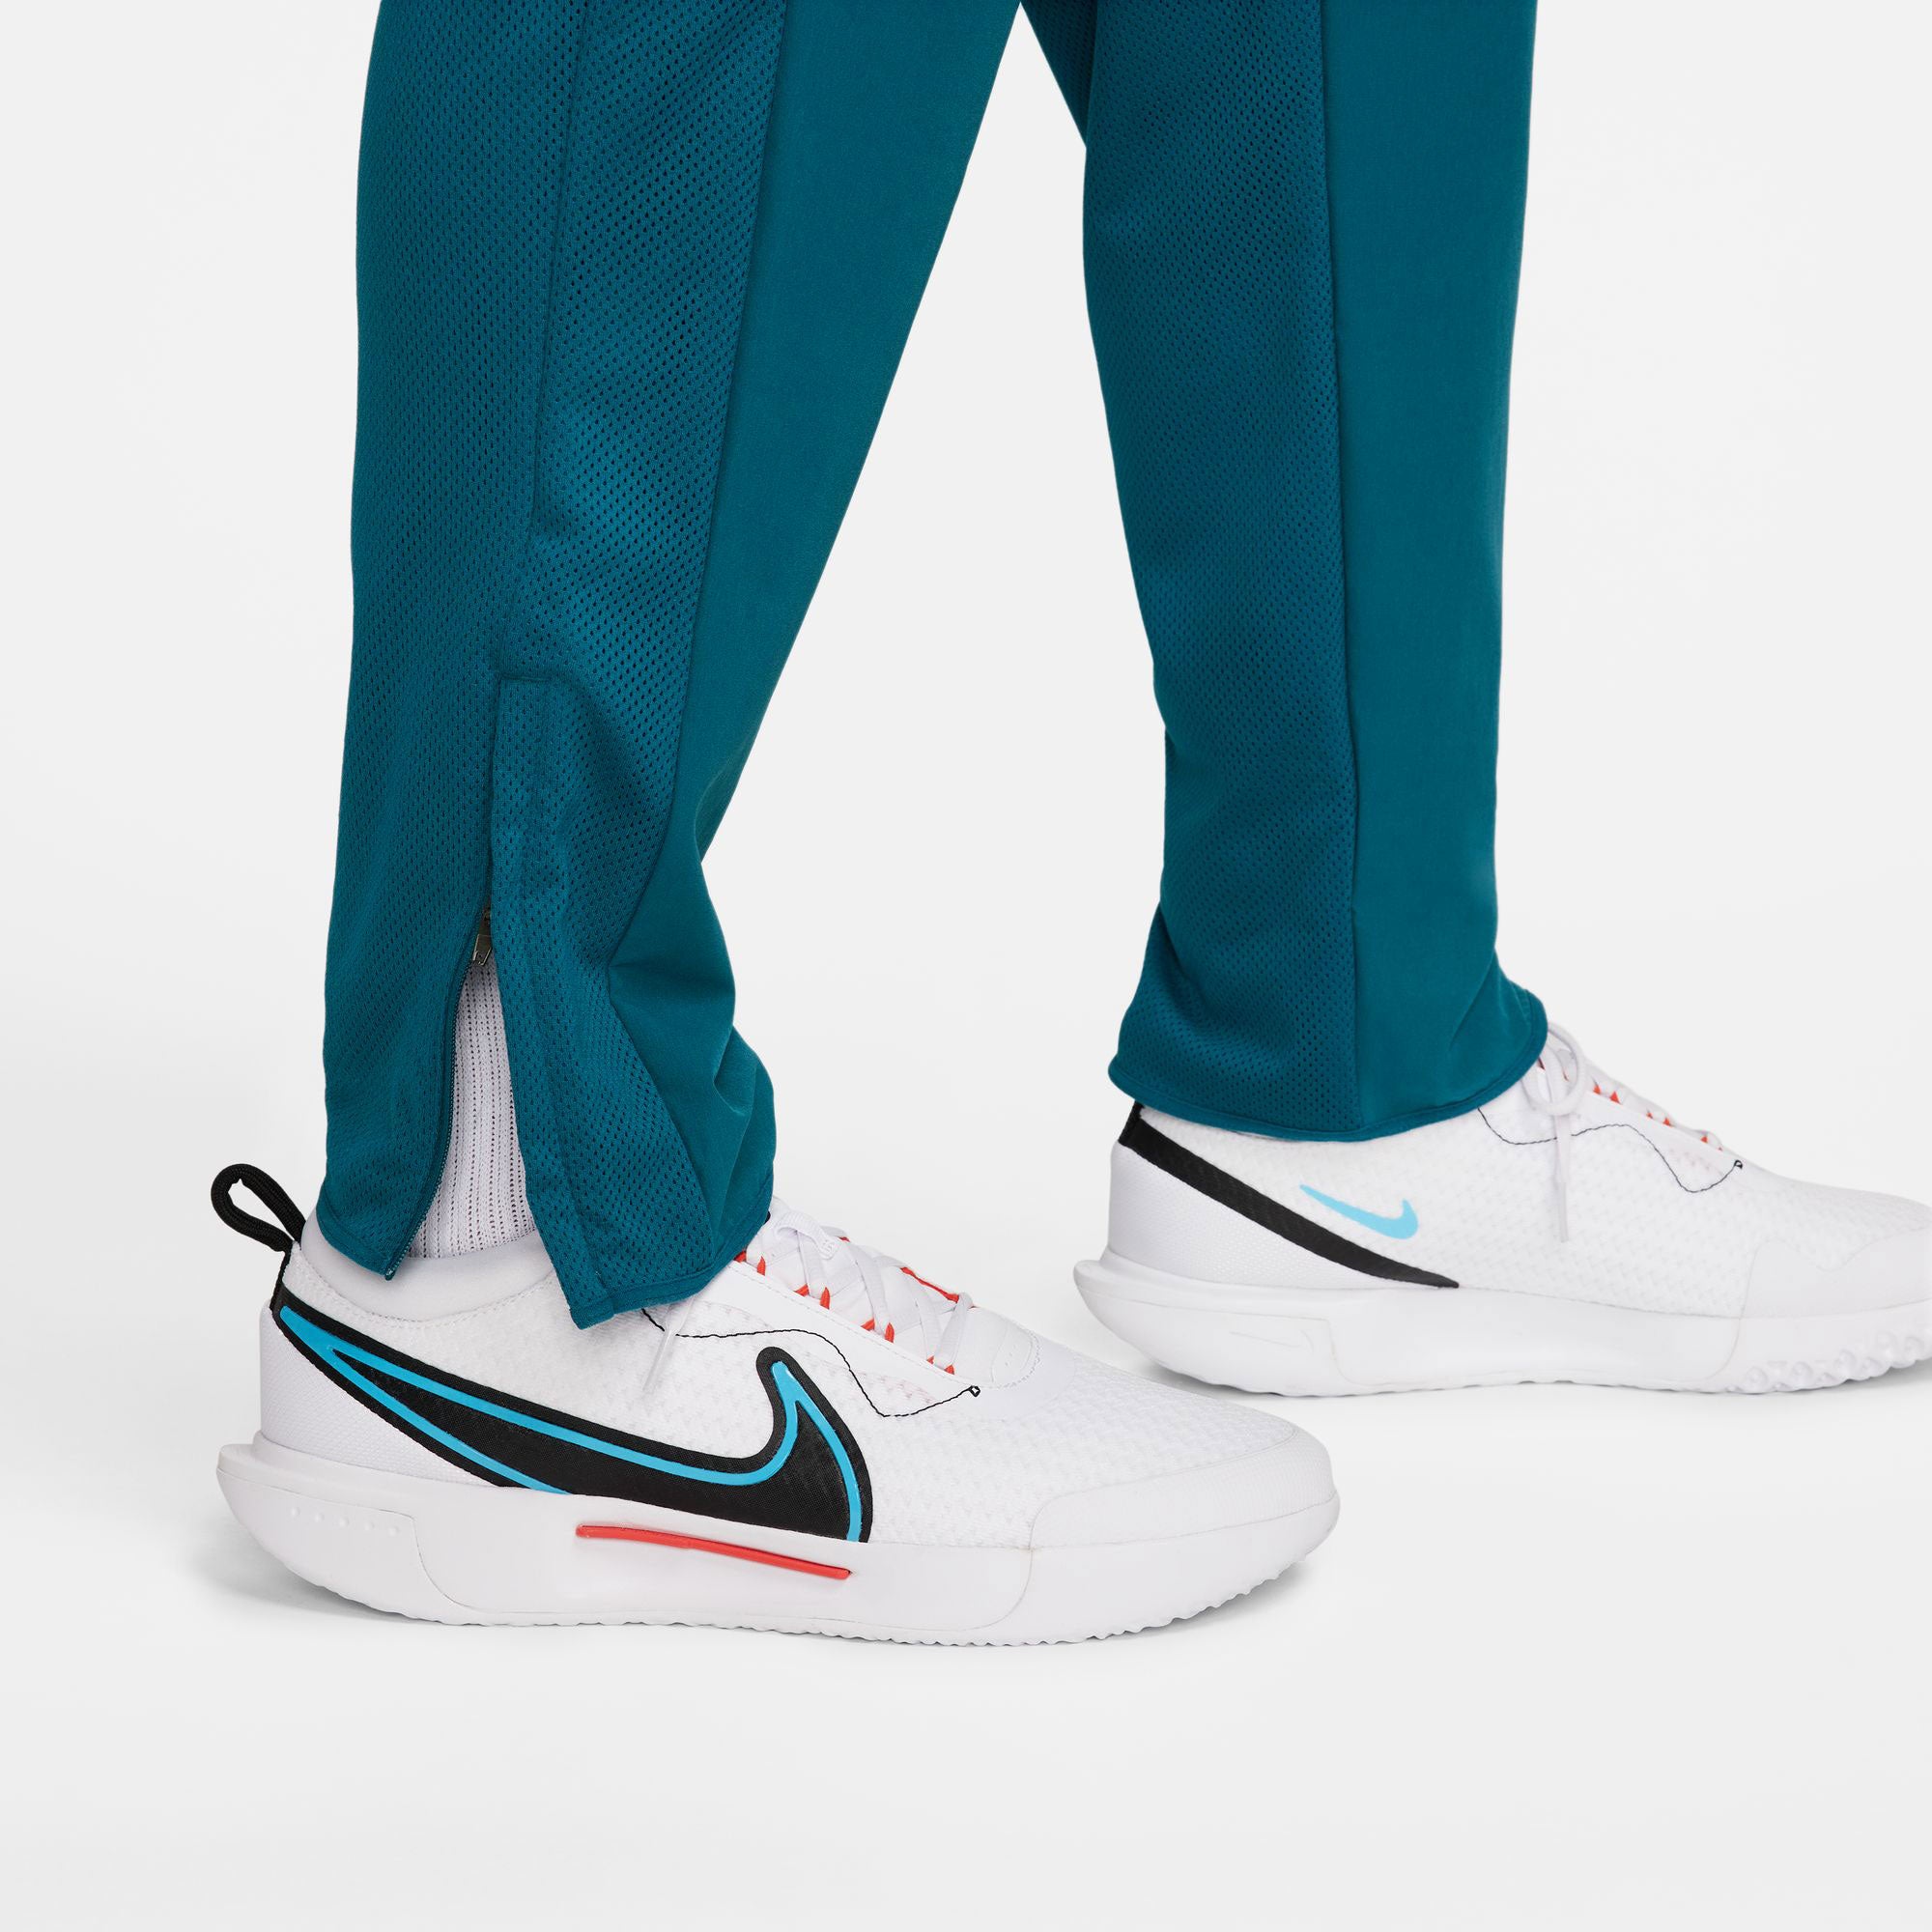 NikeCourt Advantage Men's Tennis Pants Green (4)